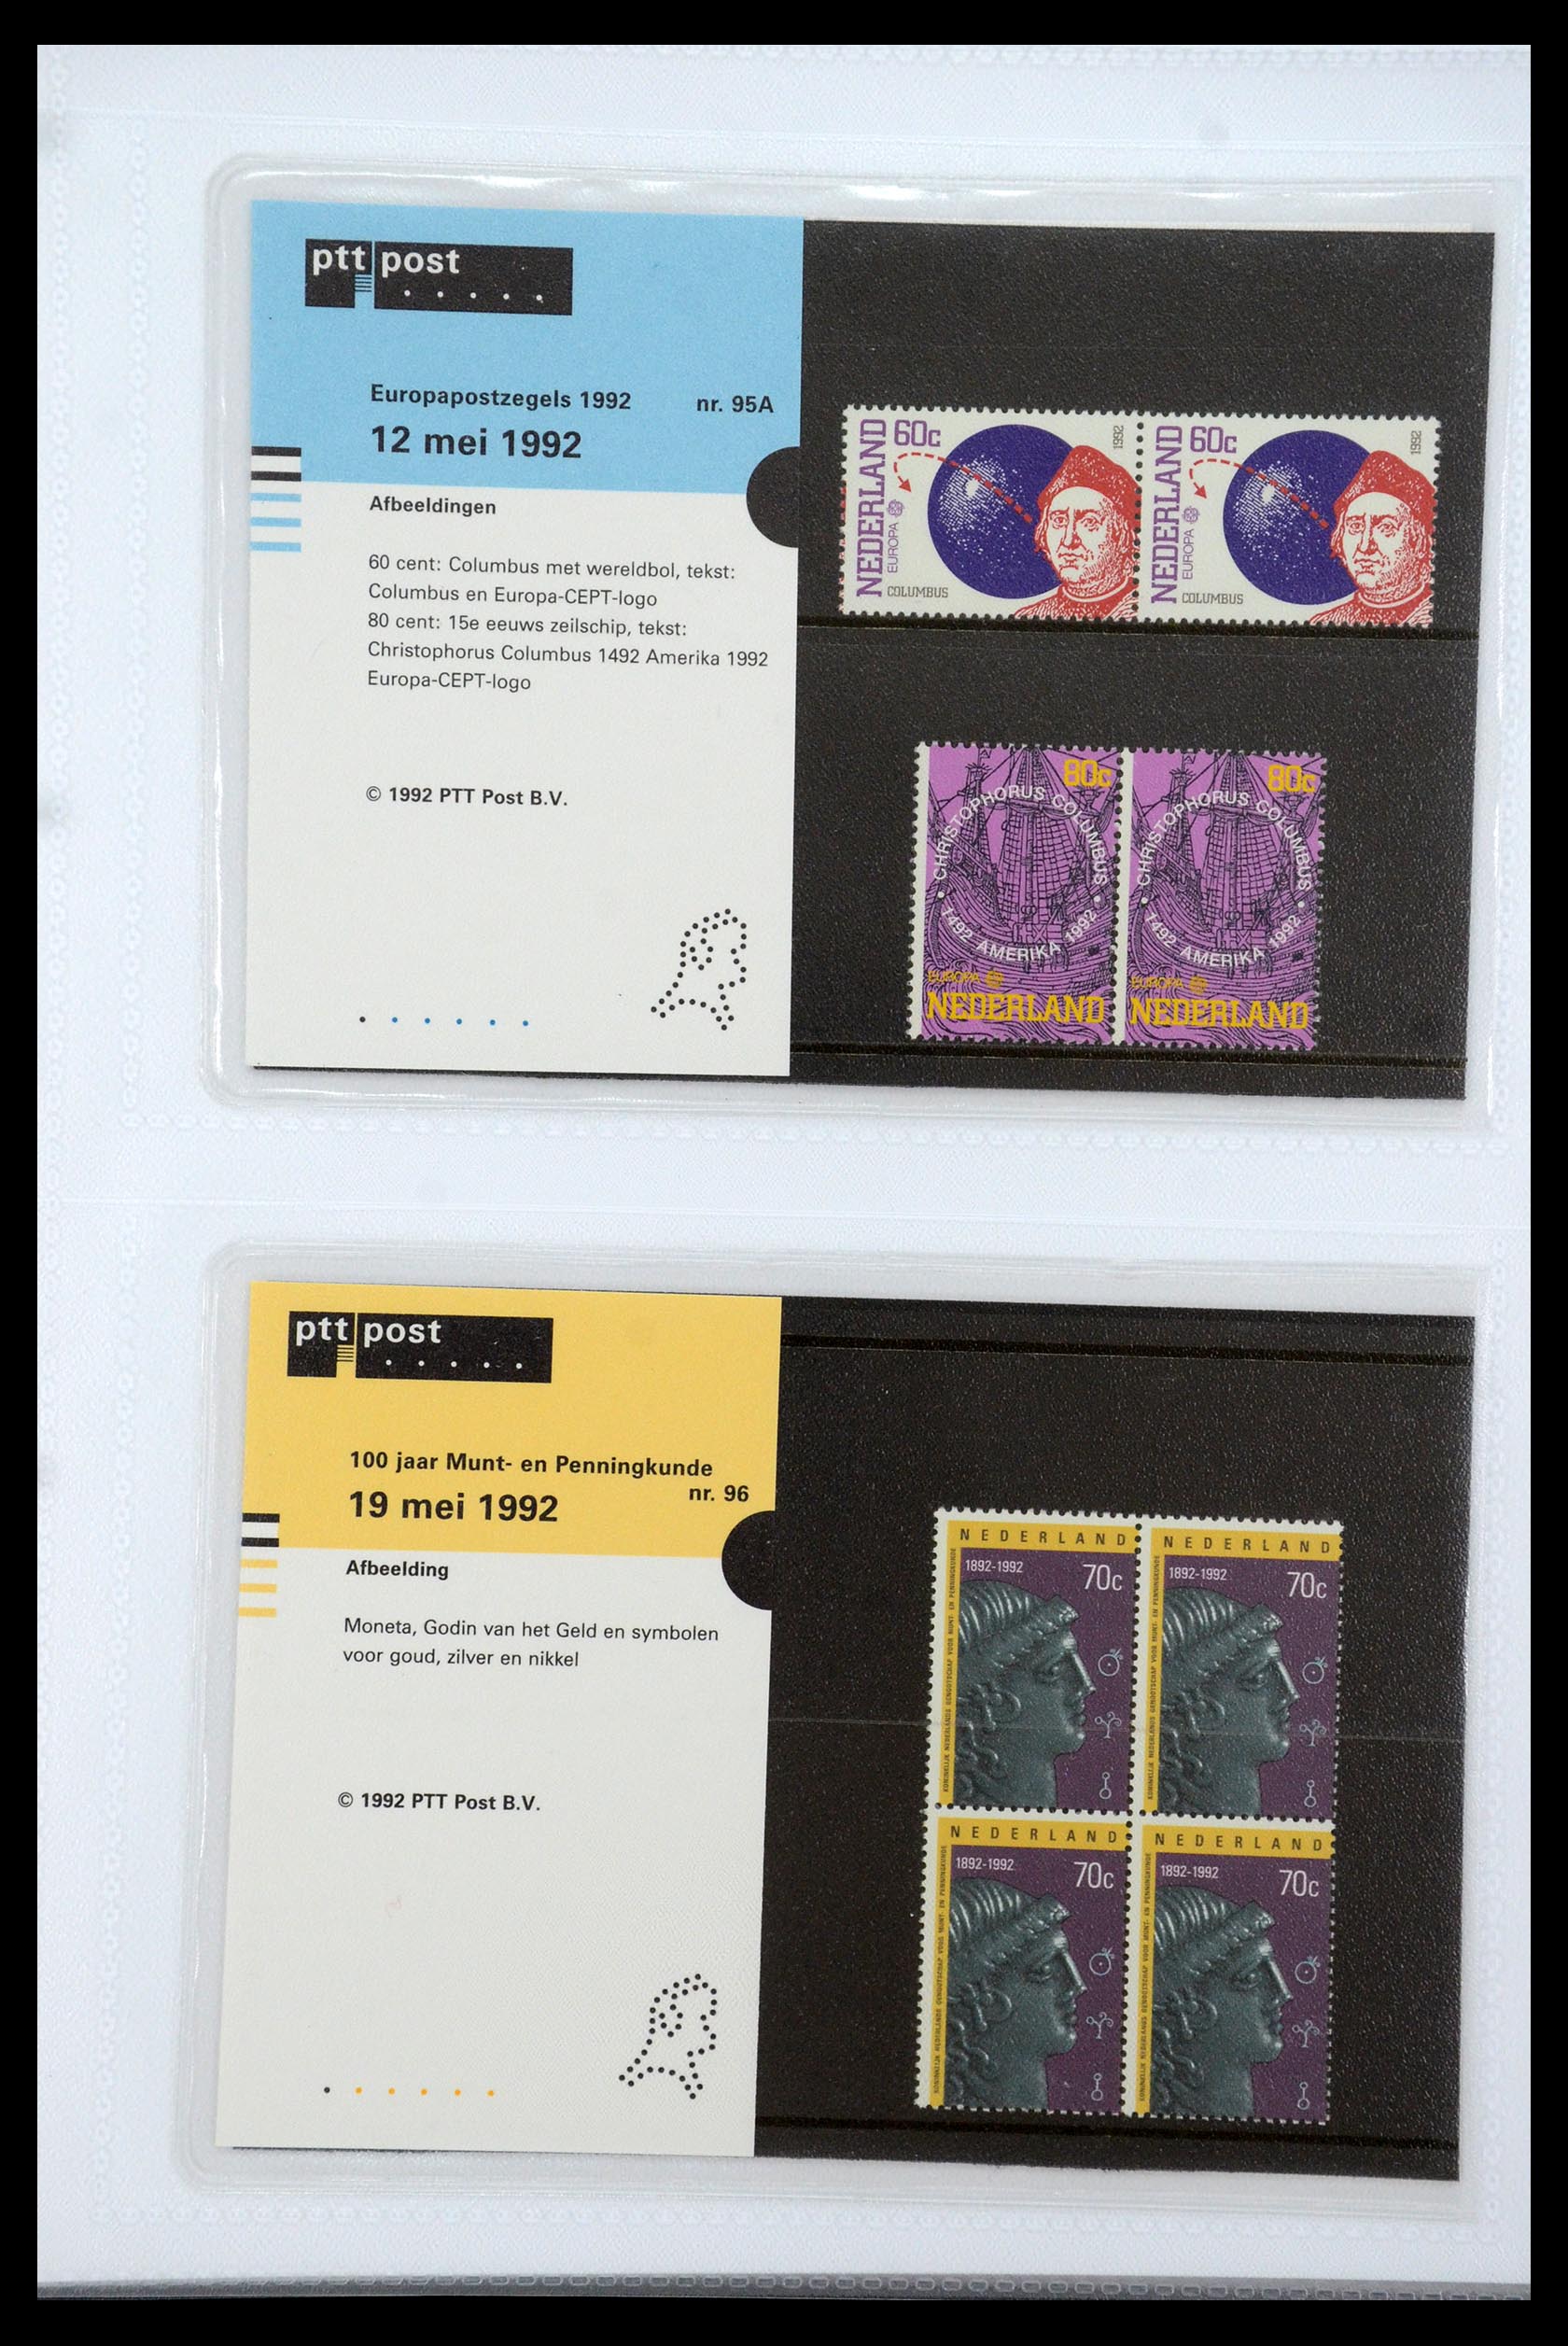 35947 049 - Stamp Collection 35947 Netherlands PTT presentation packs 1982-2019!